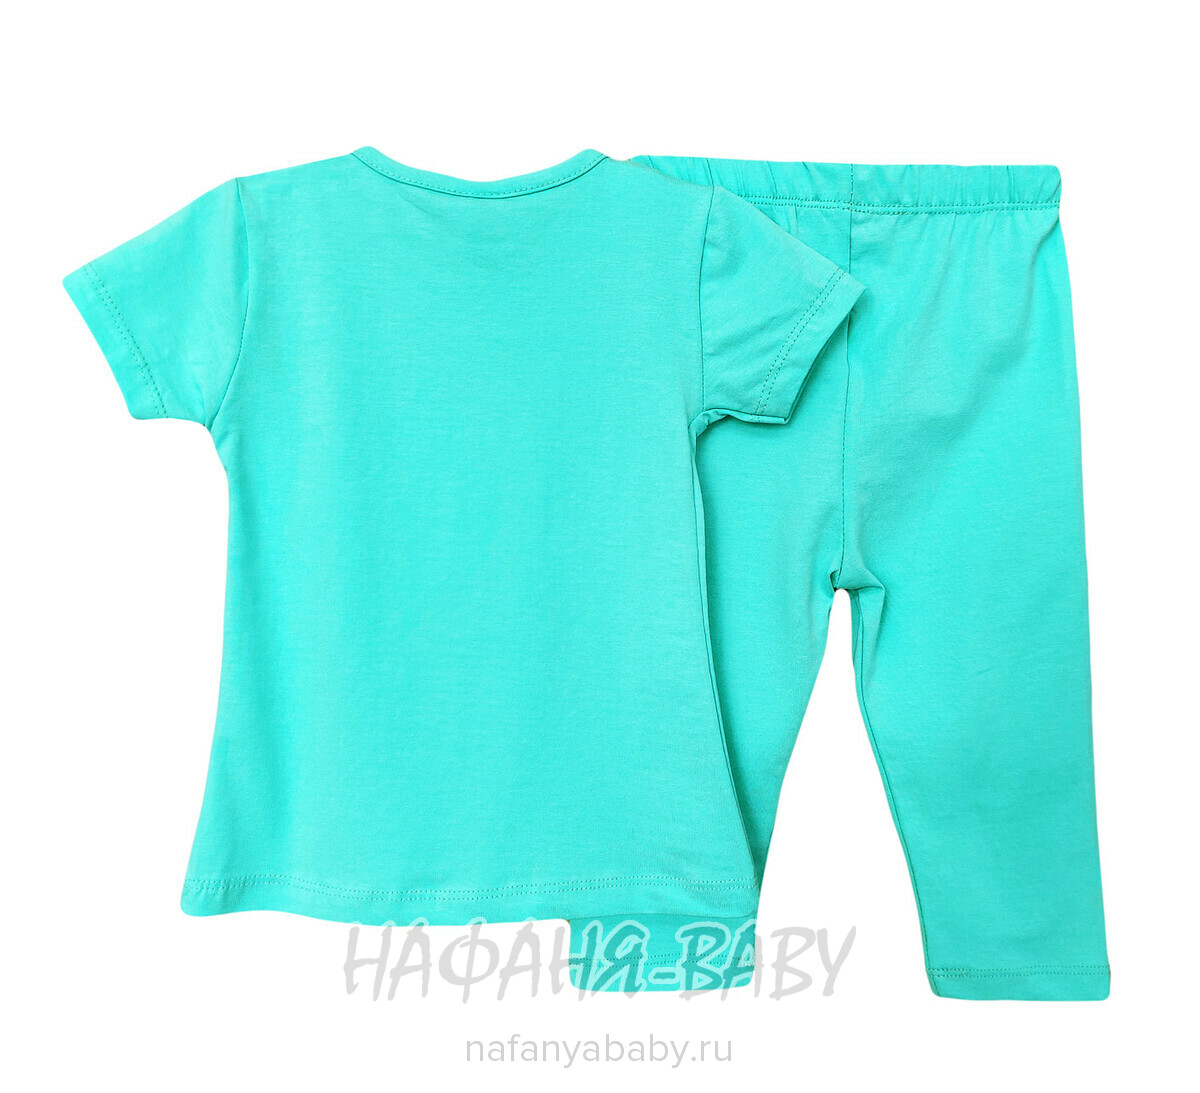 Детский костюм (футболка + лосины) Cit Cit арт: 16314, 2-5 лет, цвет бирюзовый, оптом Турция